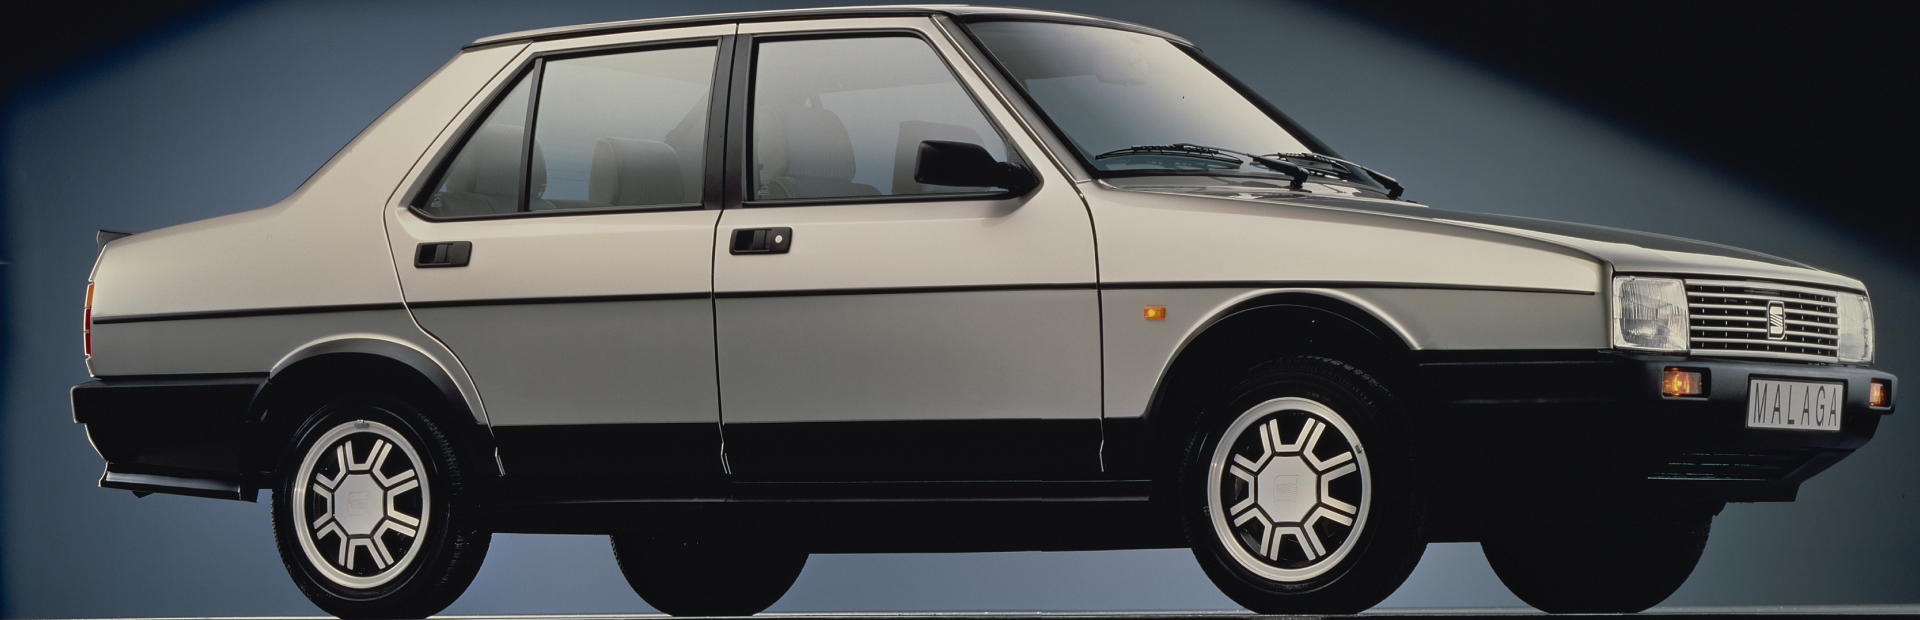 Pierwszy niezależny model i zarazem pionierski sedan SEAT-a. Czym wyróżniał się model Malaga?